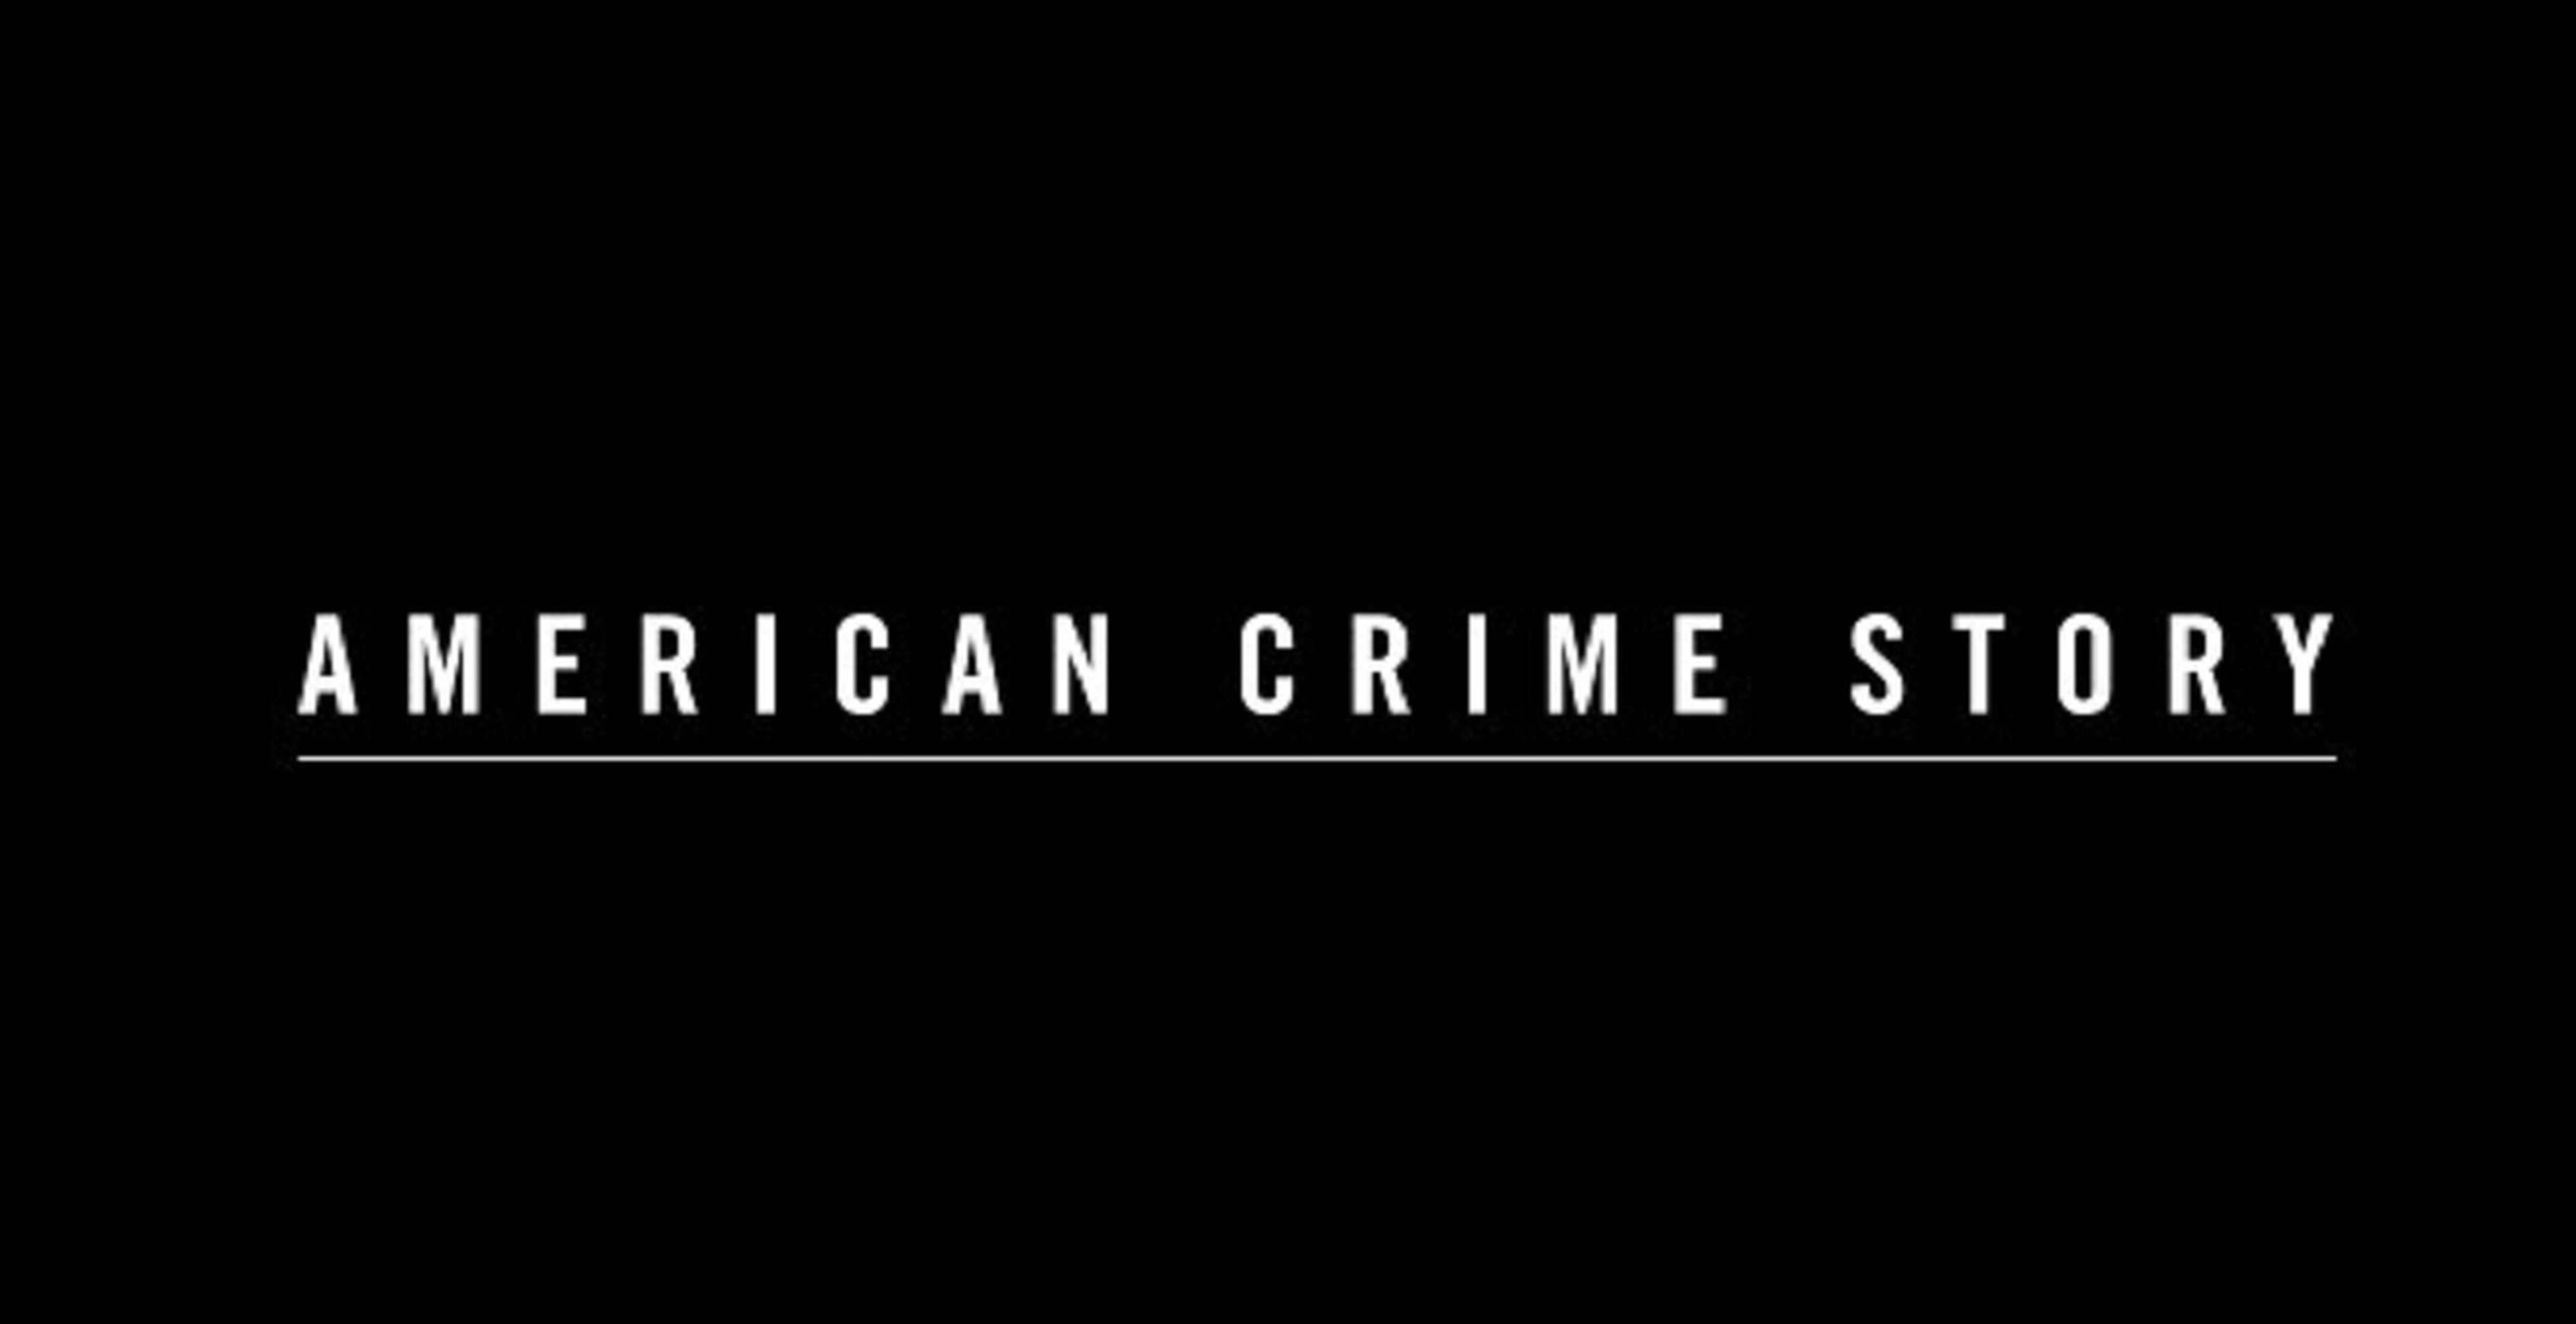 La historia se contará en la serie de televisión American Crime Story